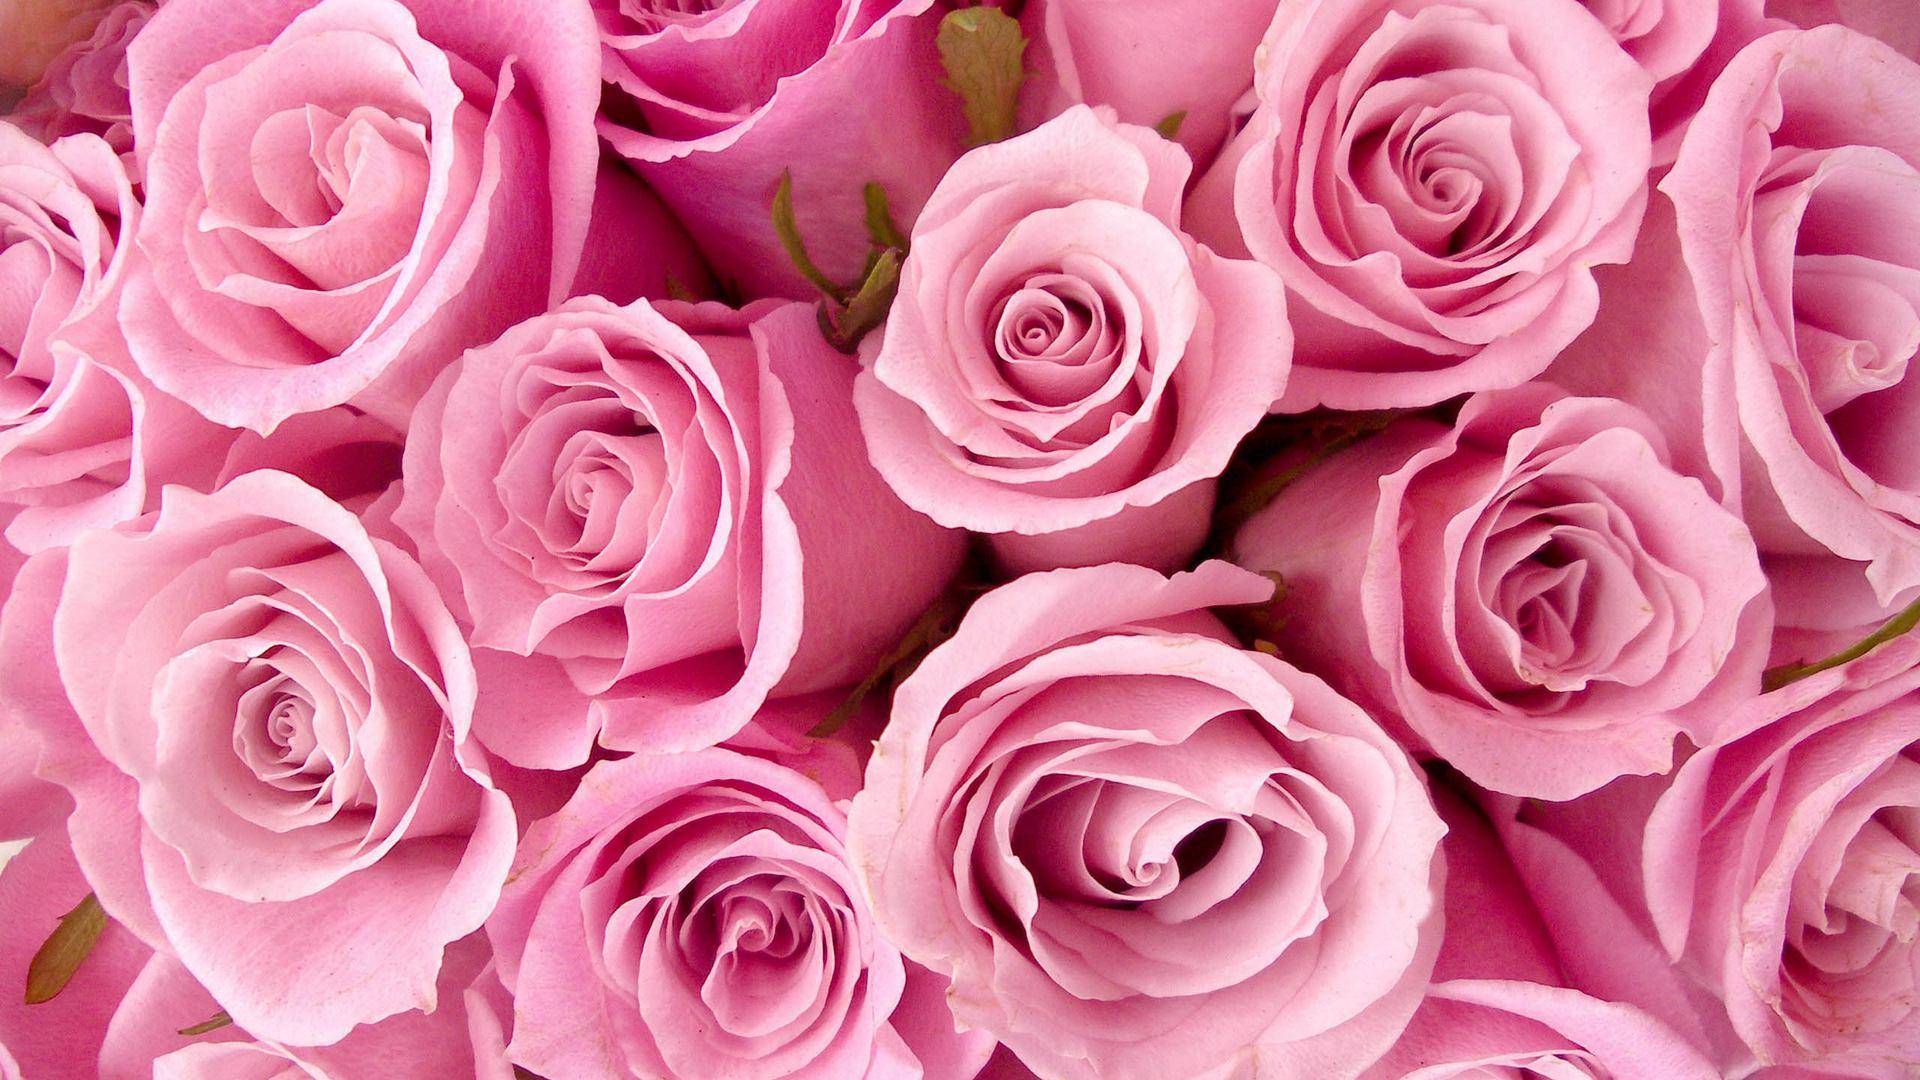 Flowers Pink Roses wallpaper (Desktop, Phone, Tablet)